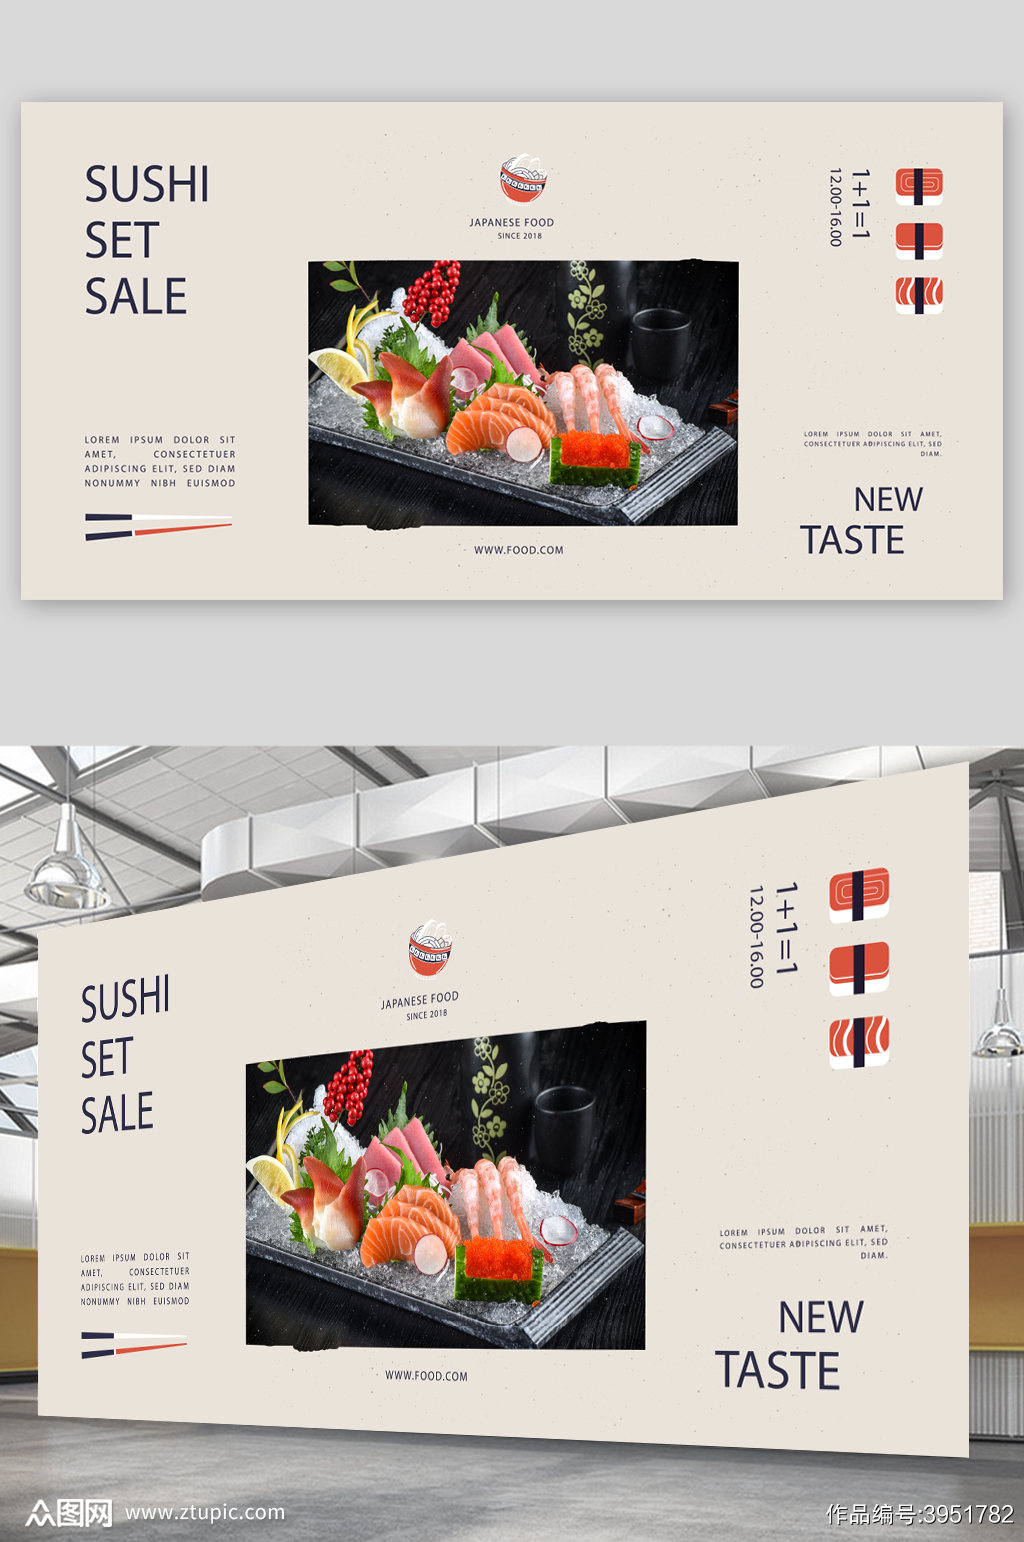 生鱼片沙拉寿司图片素材-编号11088086-图行天下